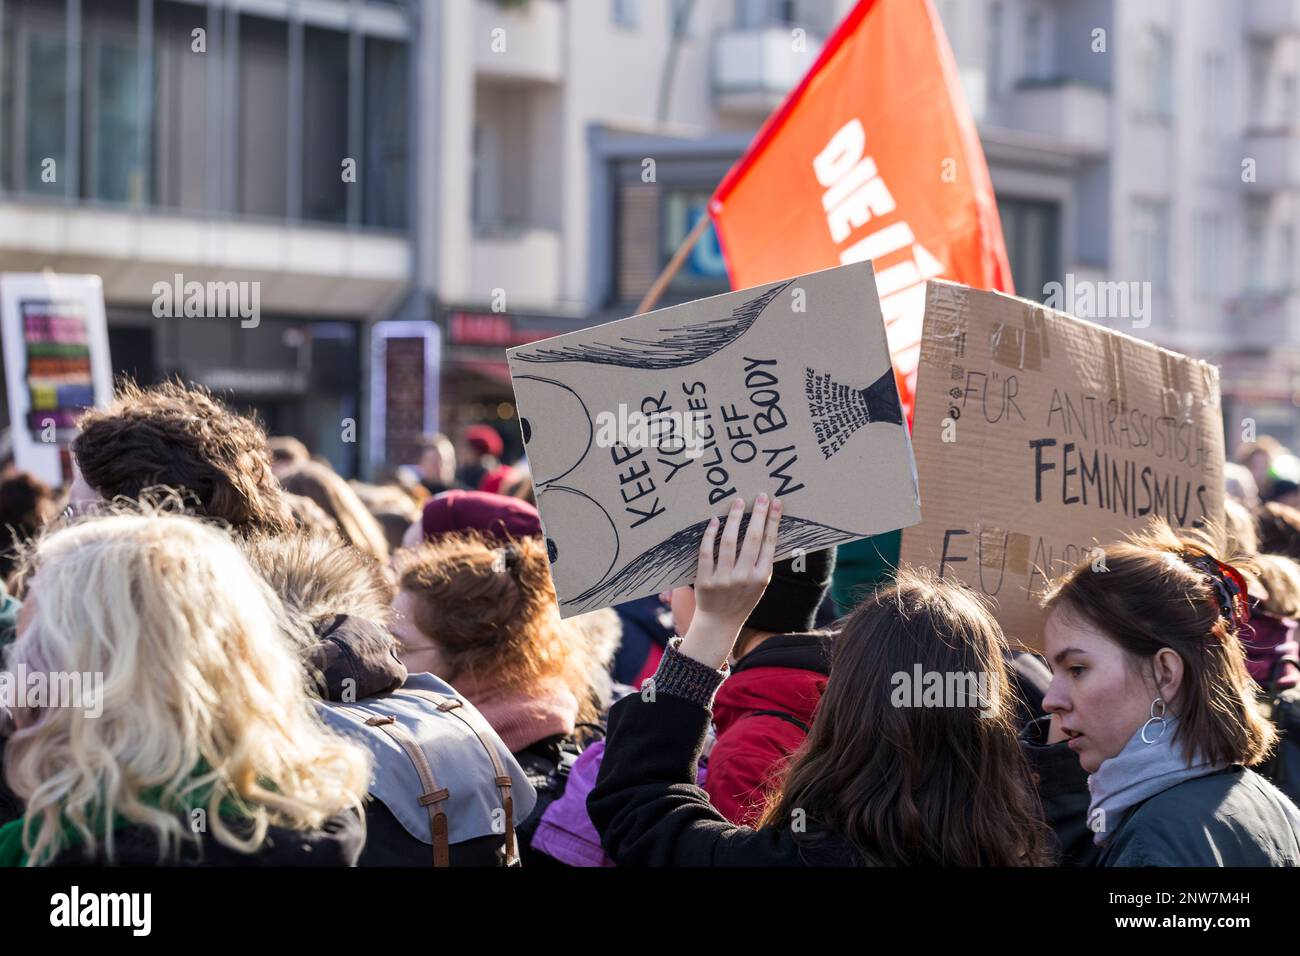 Berlin, Allemagne 3/8/2020 des jeunes femmes avec des signes de protestation improvisés qui critiquent les structures patriarcales dans la société assistent à la fête de la lutte Demonstrati Banque D'Images